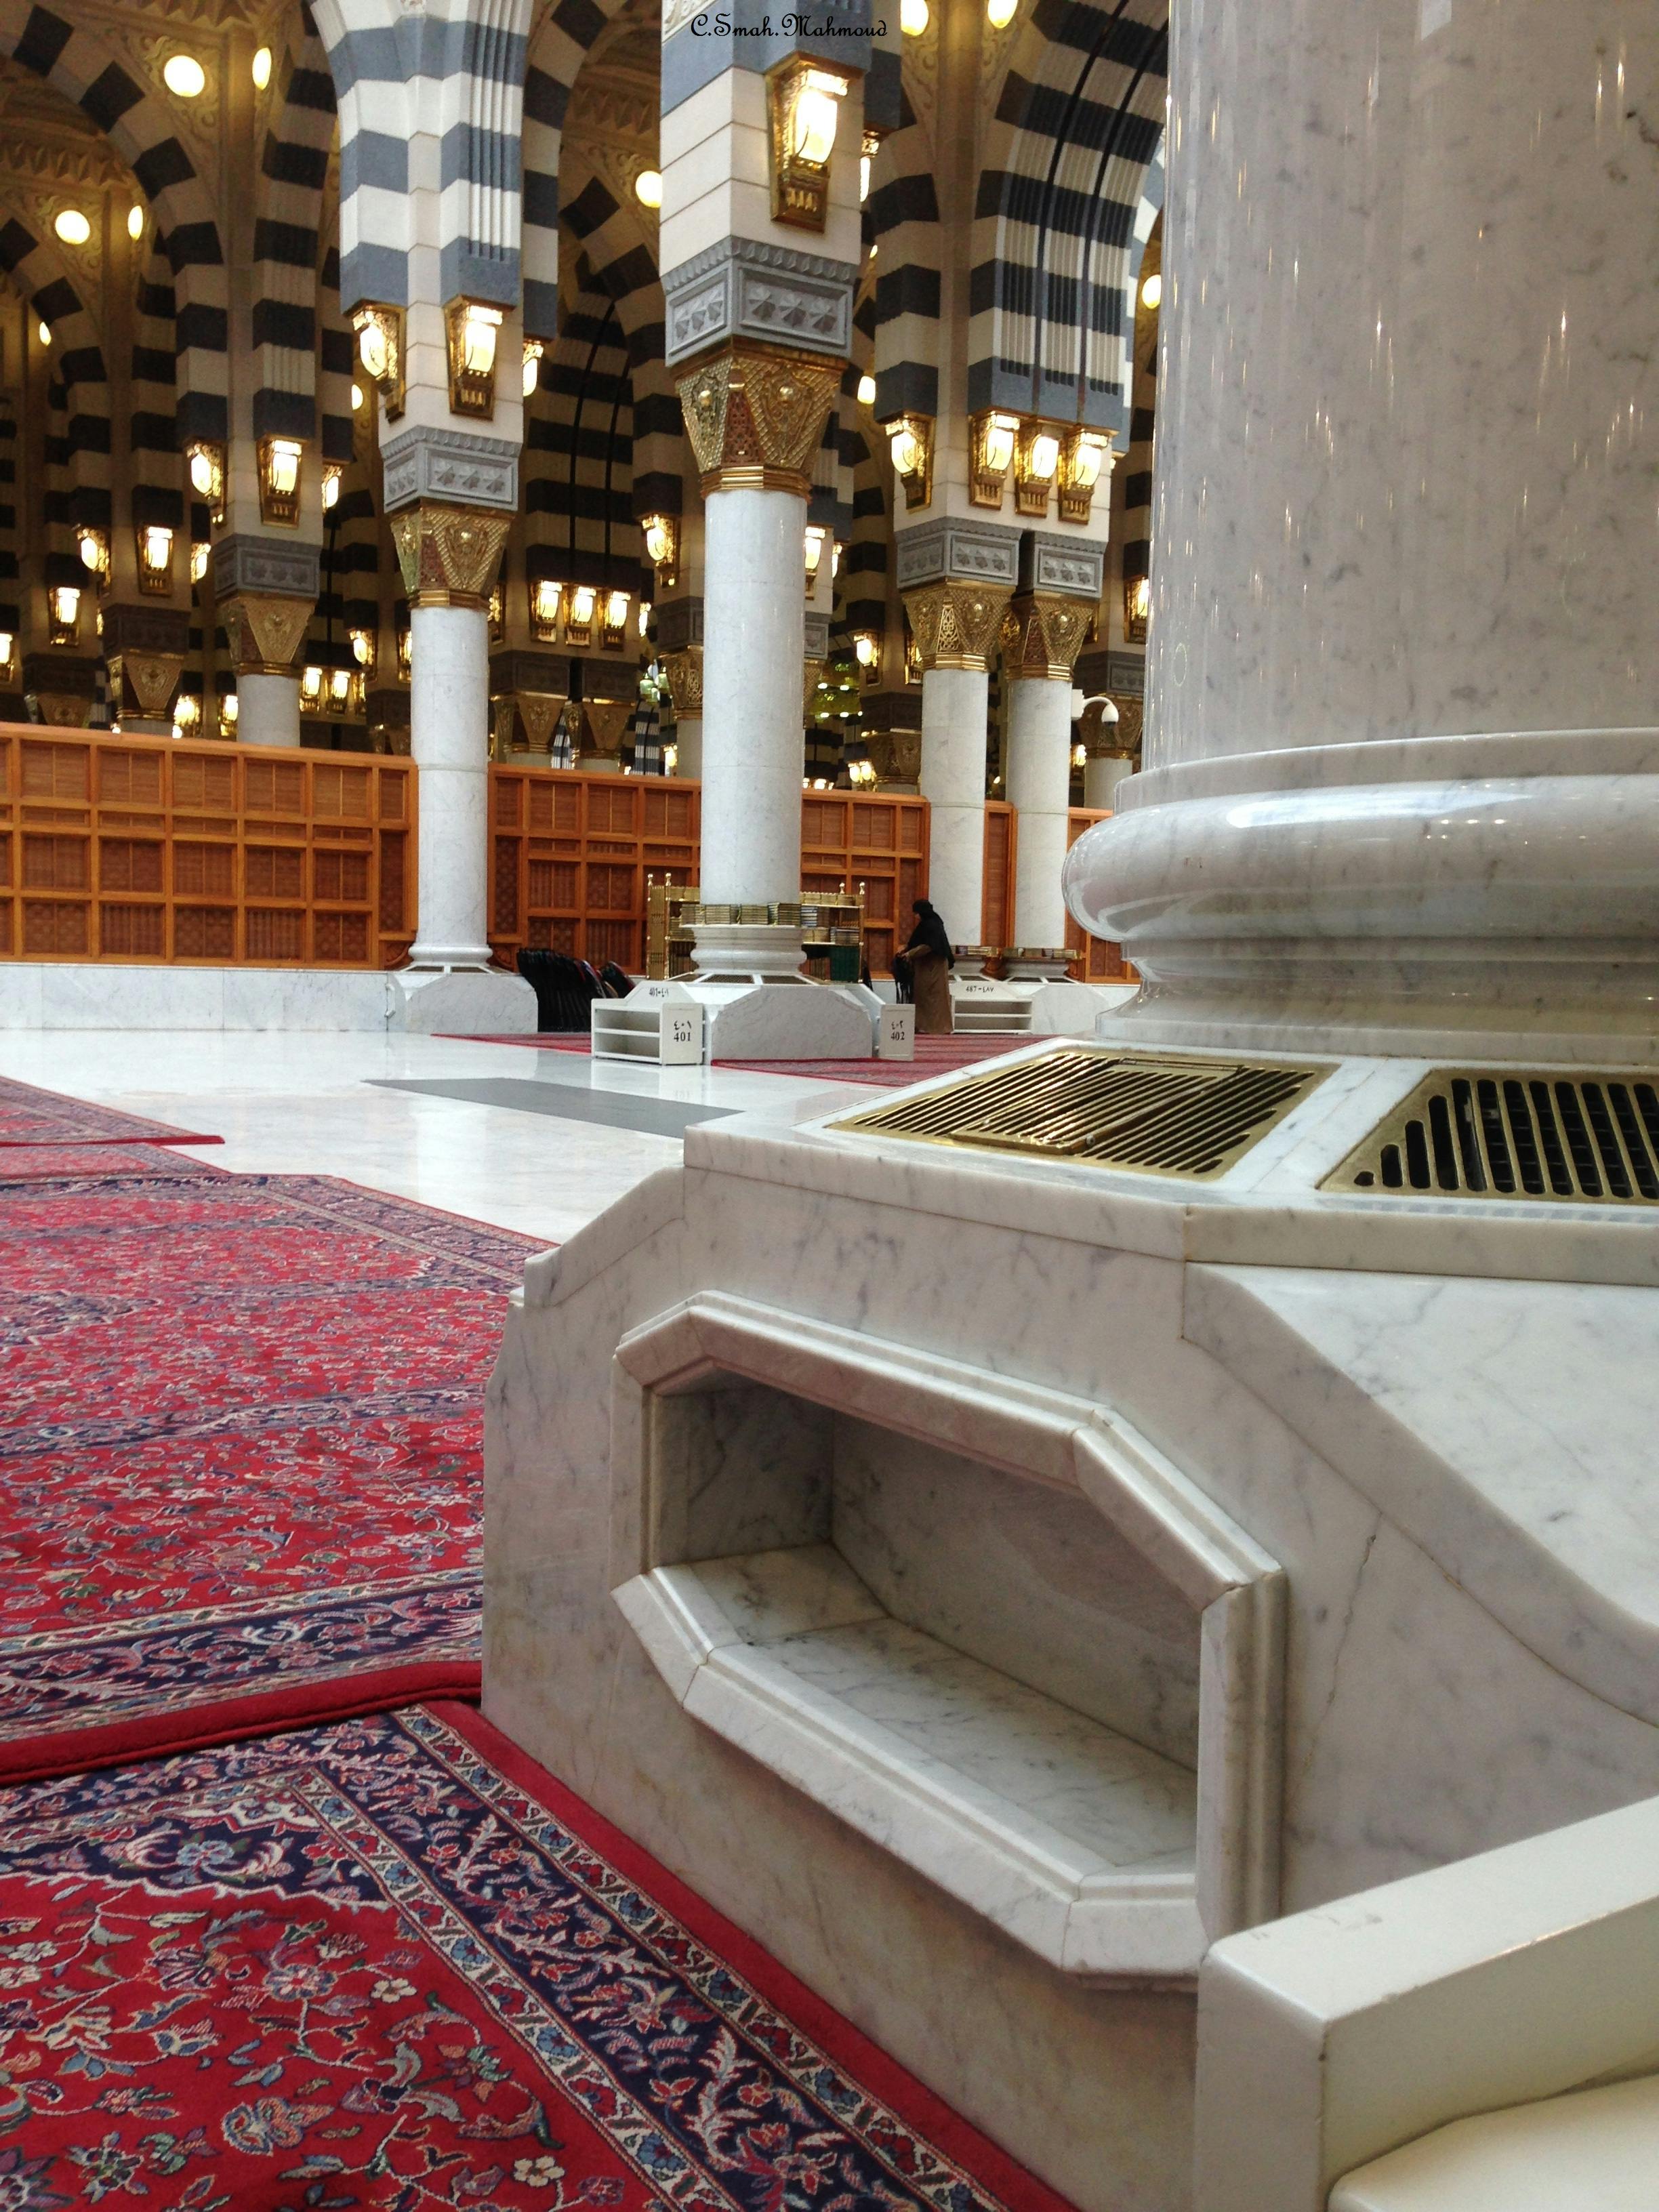 Free stock photo of prophet mosque